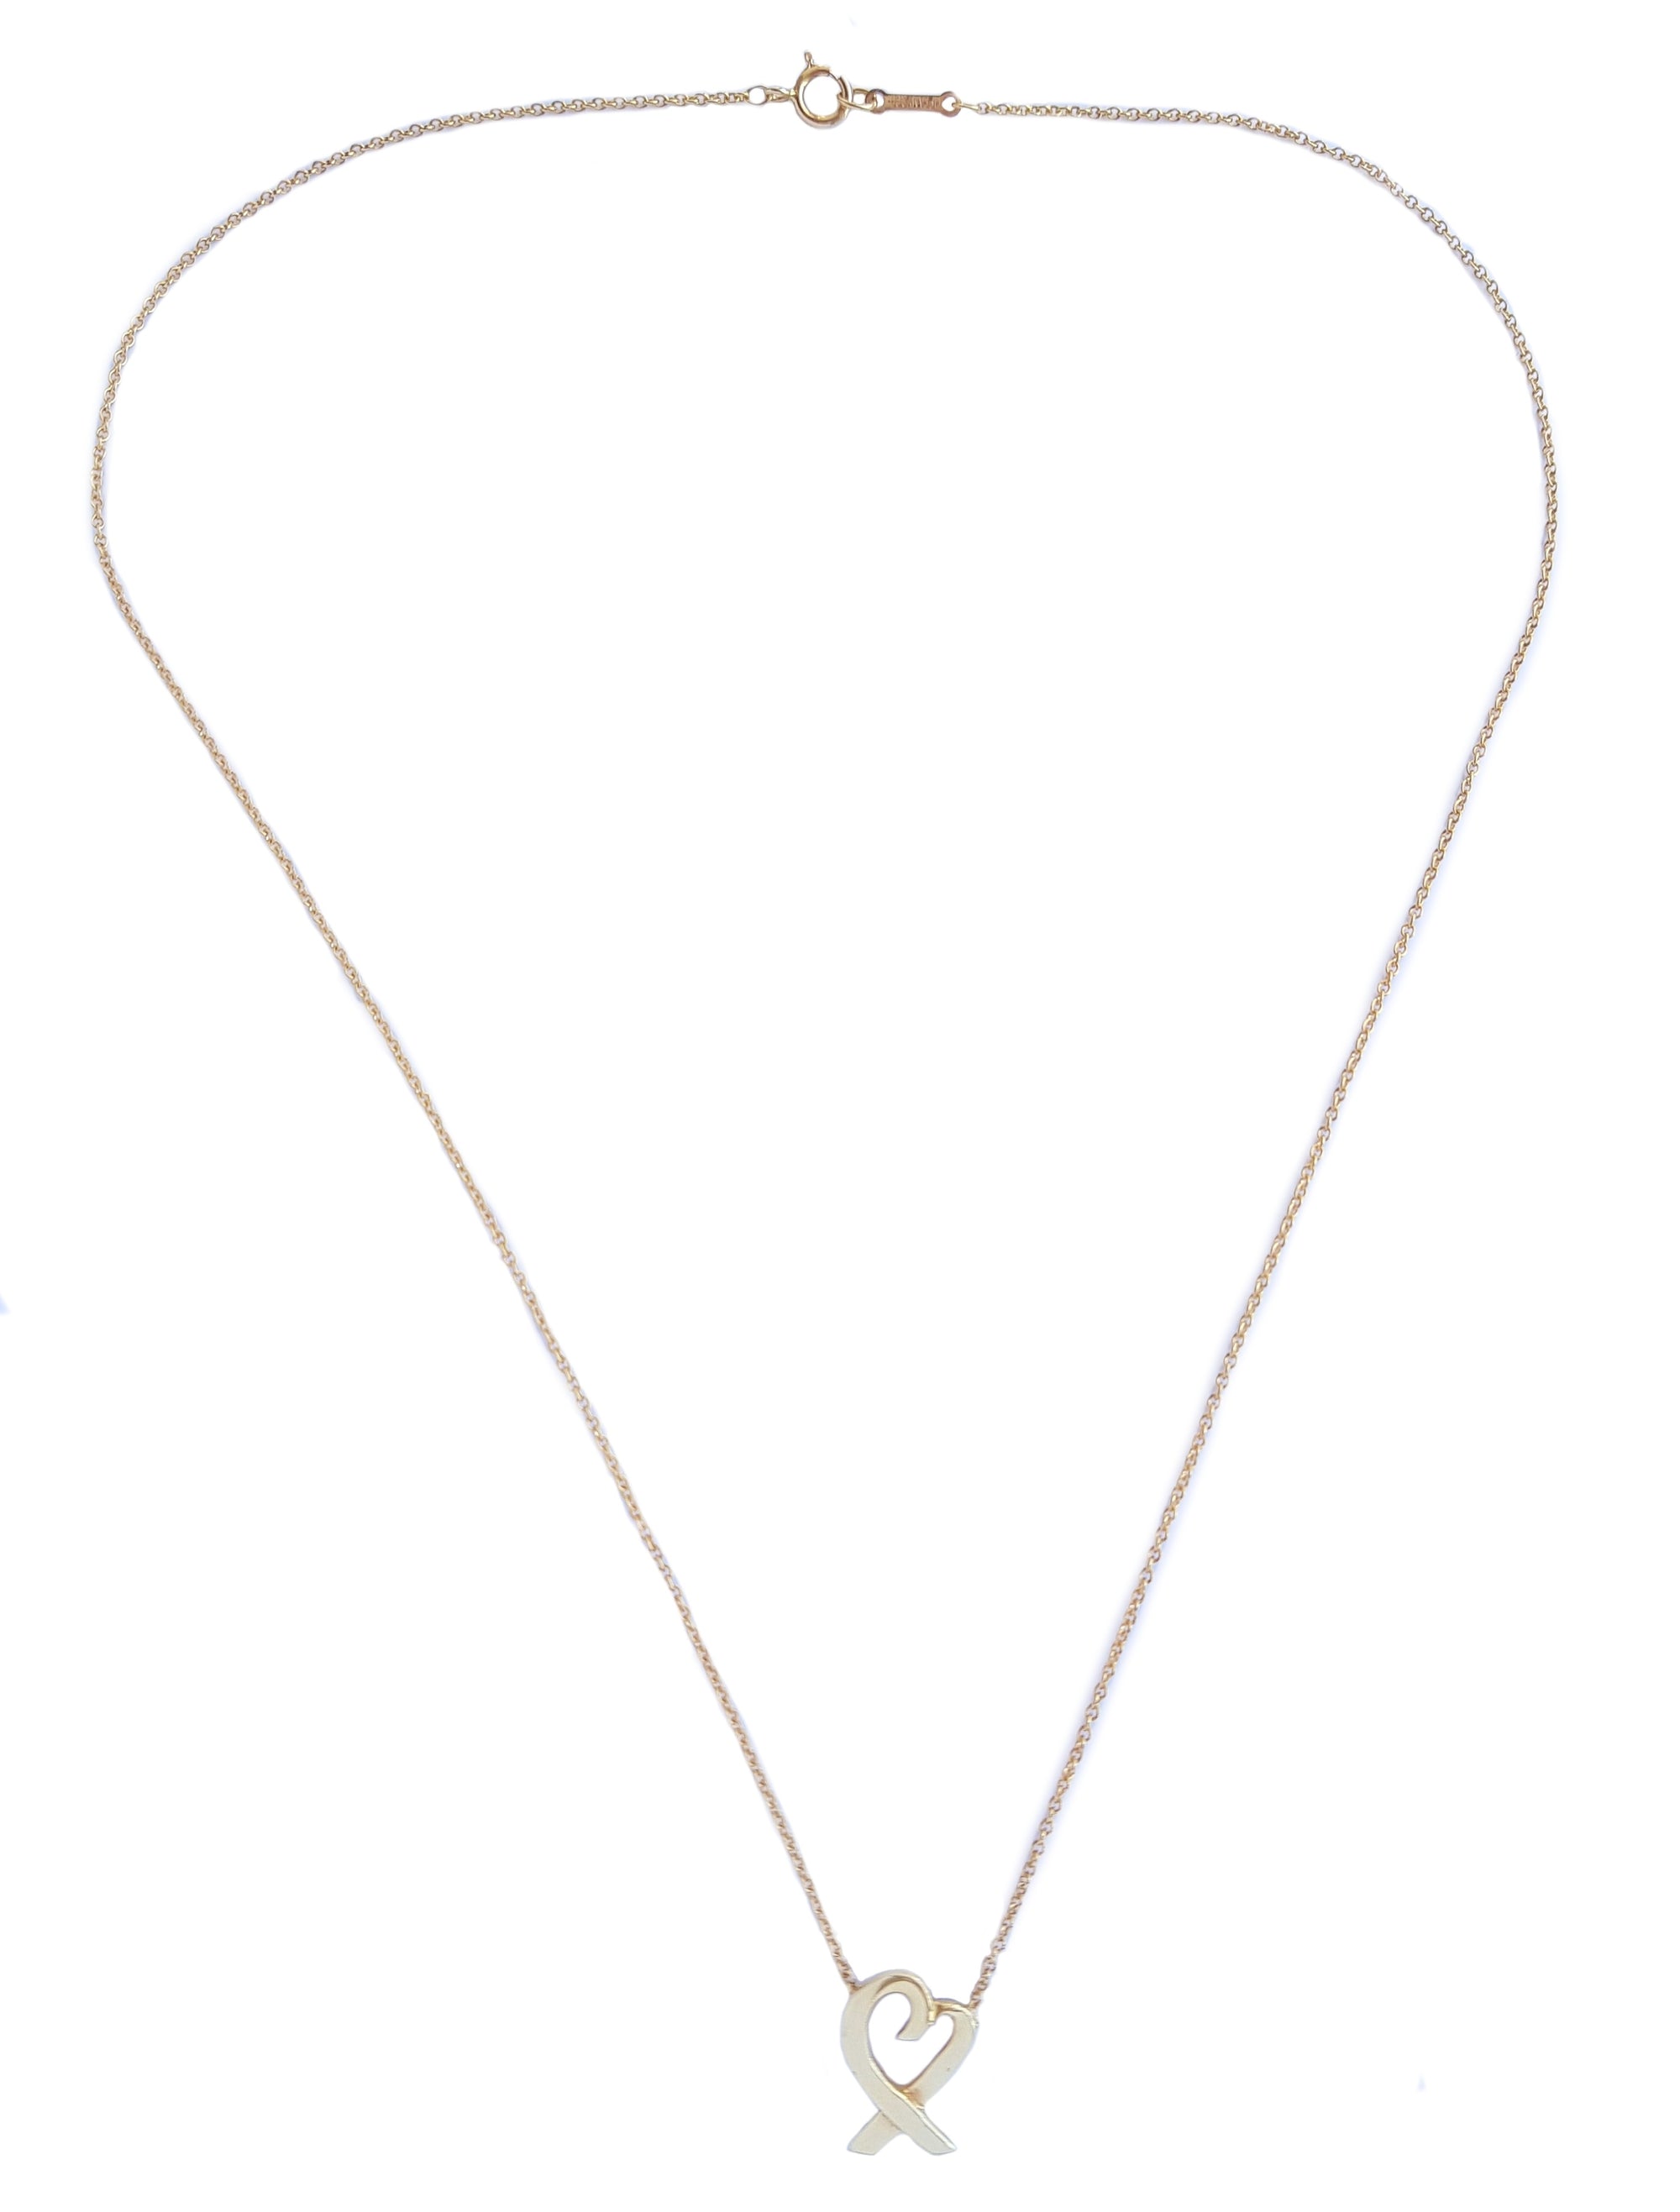 Tiffany & Co Paloma Picasso 750 Loving Heart Necklace 14mm Medium